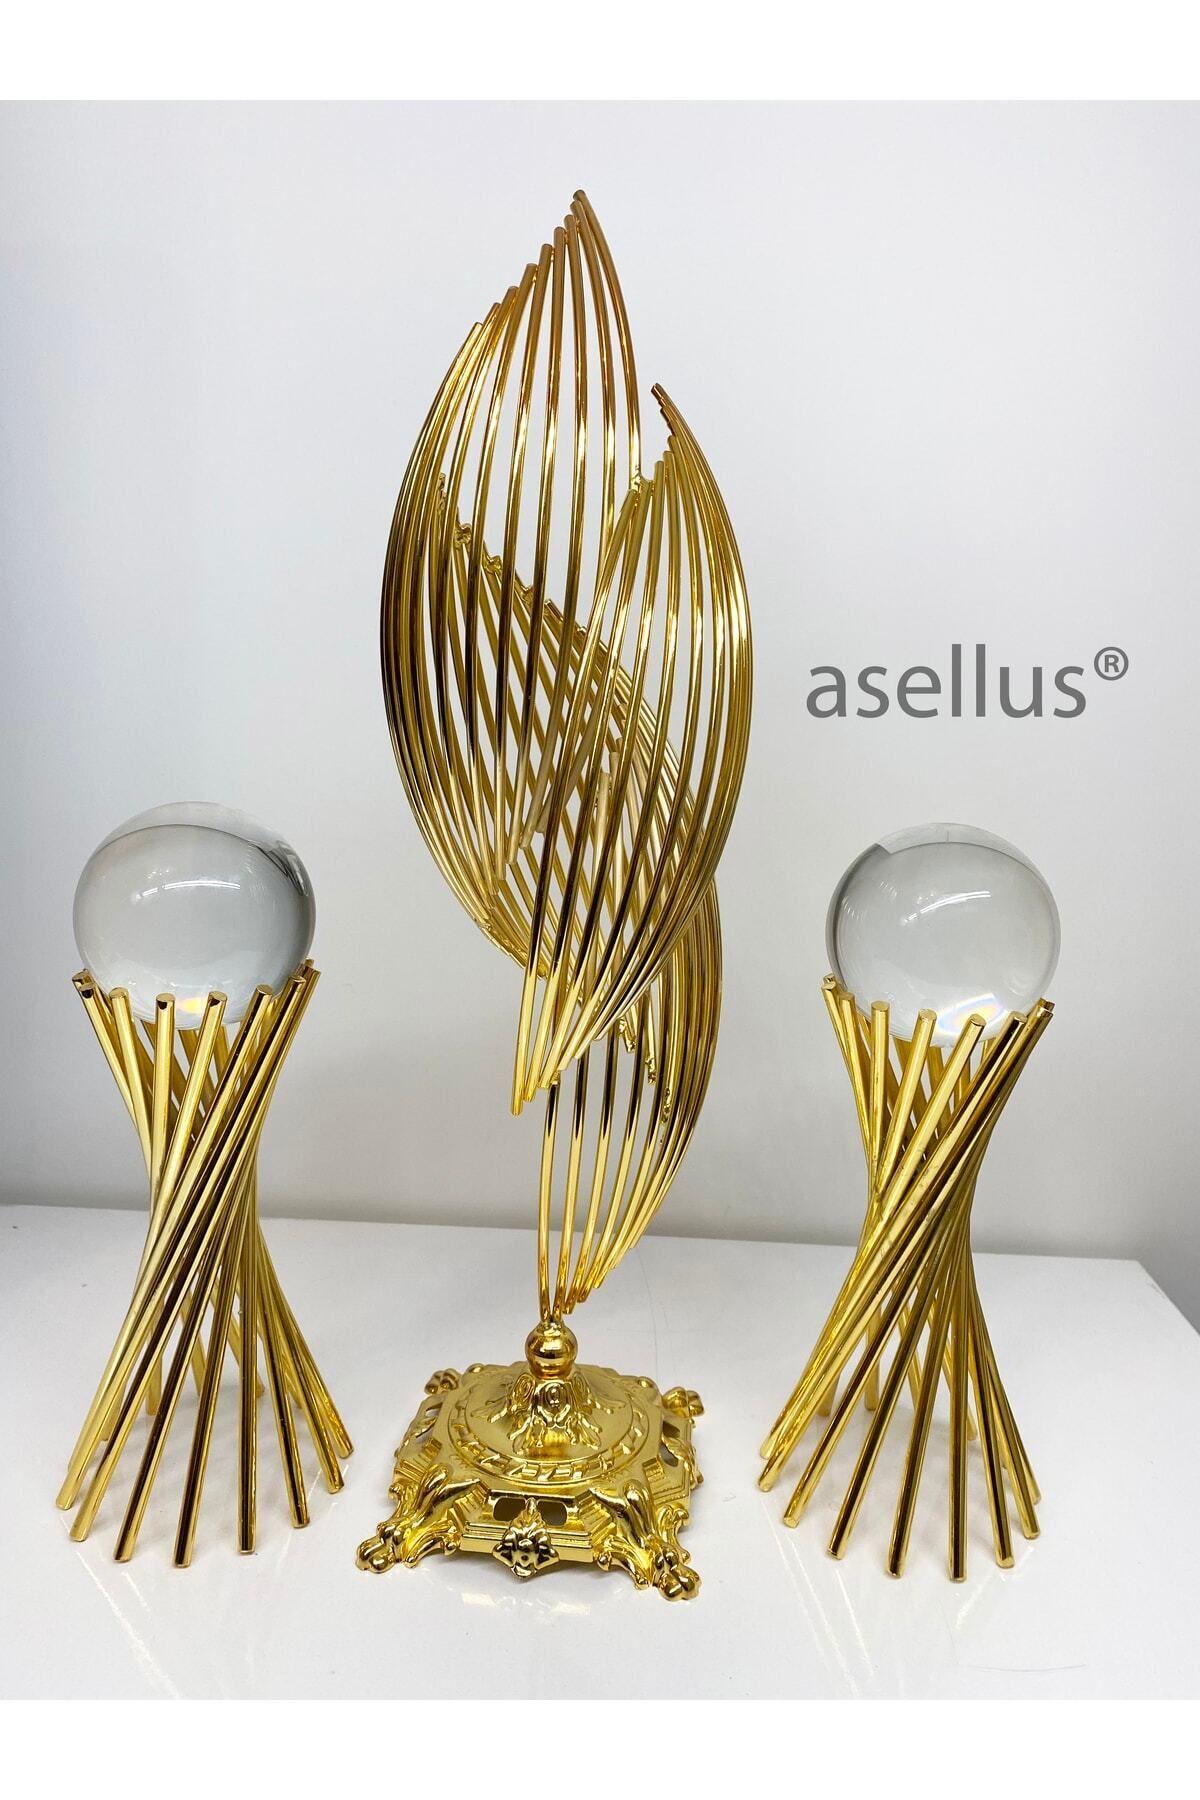 asellus 3'lü Set: Şık Metal Tasarımlı 2 Burgulu Ve 1 Helezon Dekorasyon Objesi, Hediyelik Lüks Ev Dekorasyon